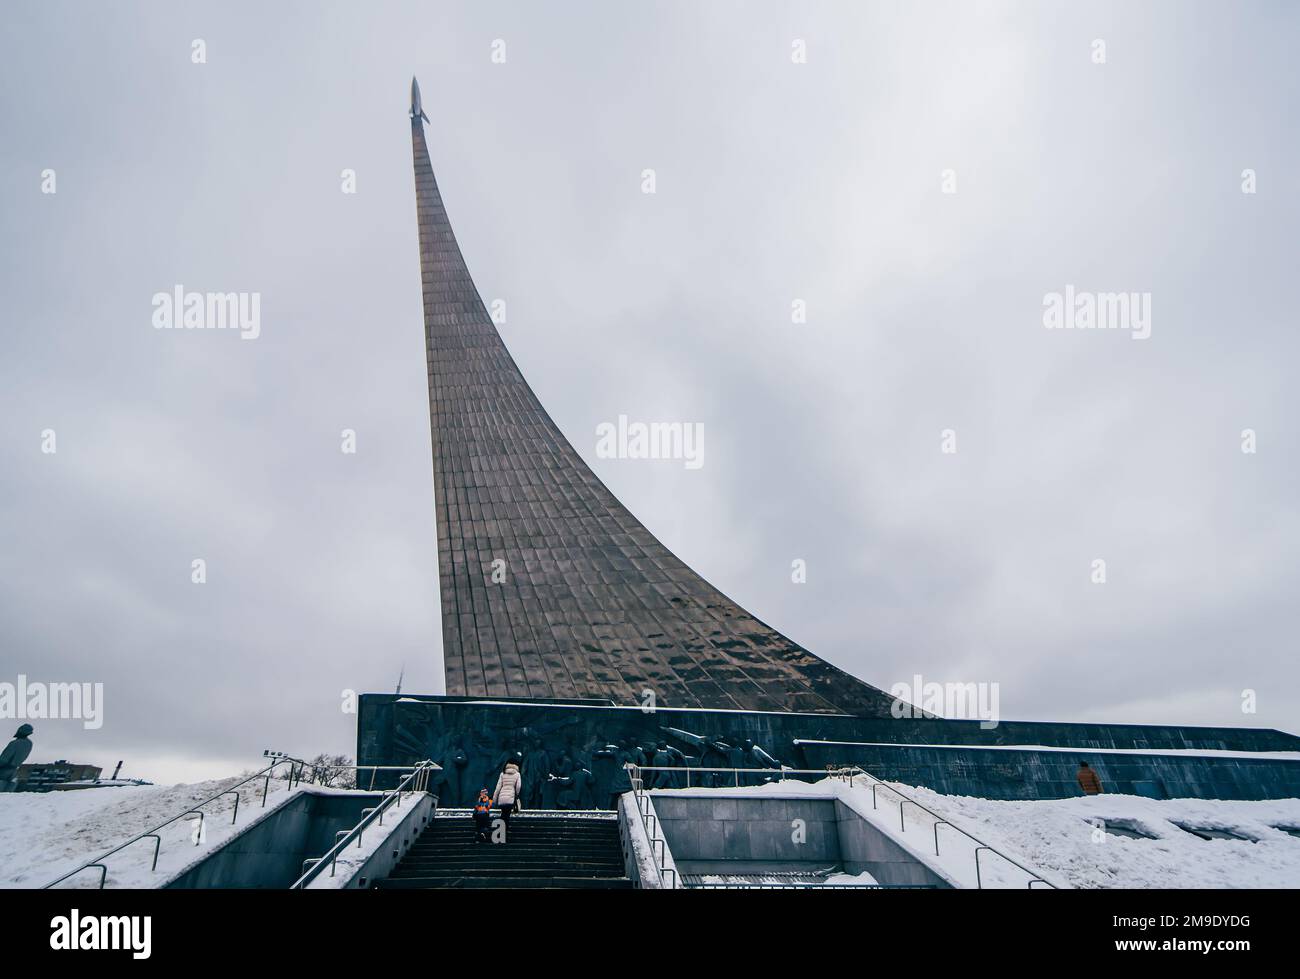 MOSCOU, RUSSIE - 25 DÉCEMBRE 2016 : monument aux conquérants de l'espace à Moscou, Russie. Musée de l'aéronautique à VDNH Banque D'Images